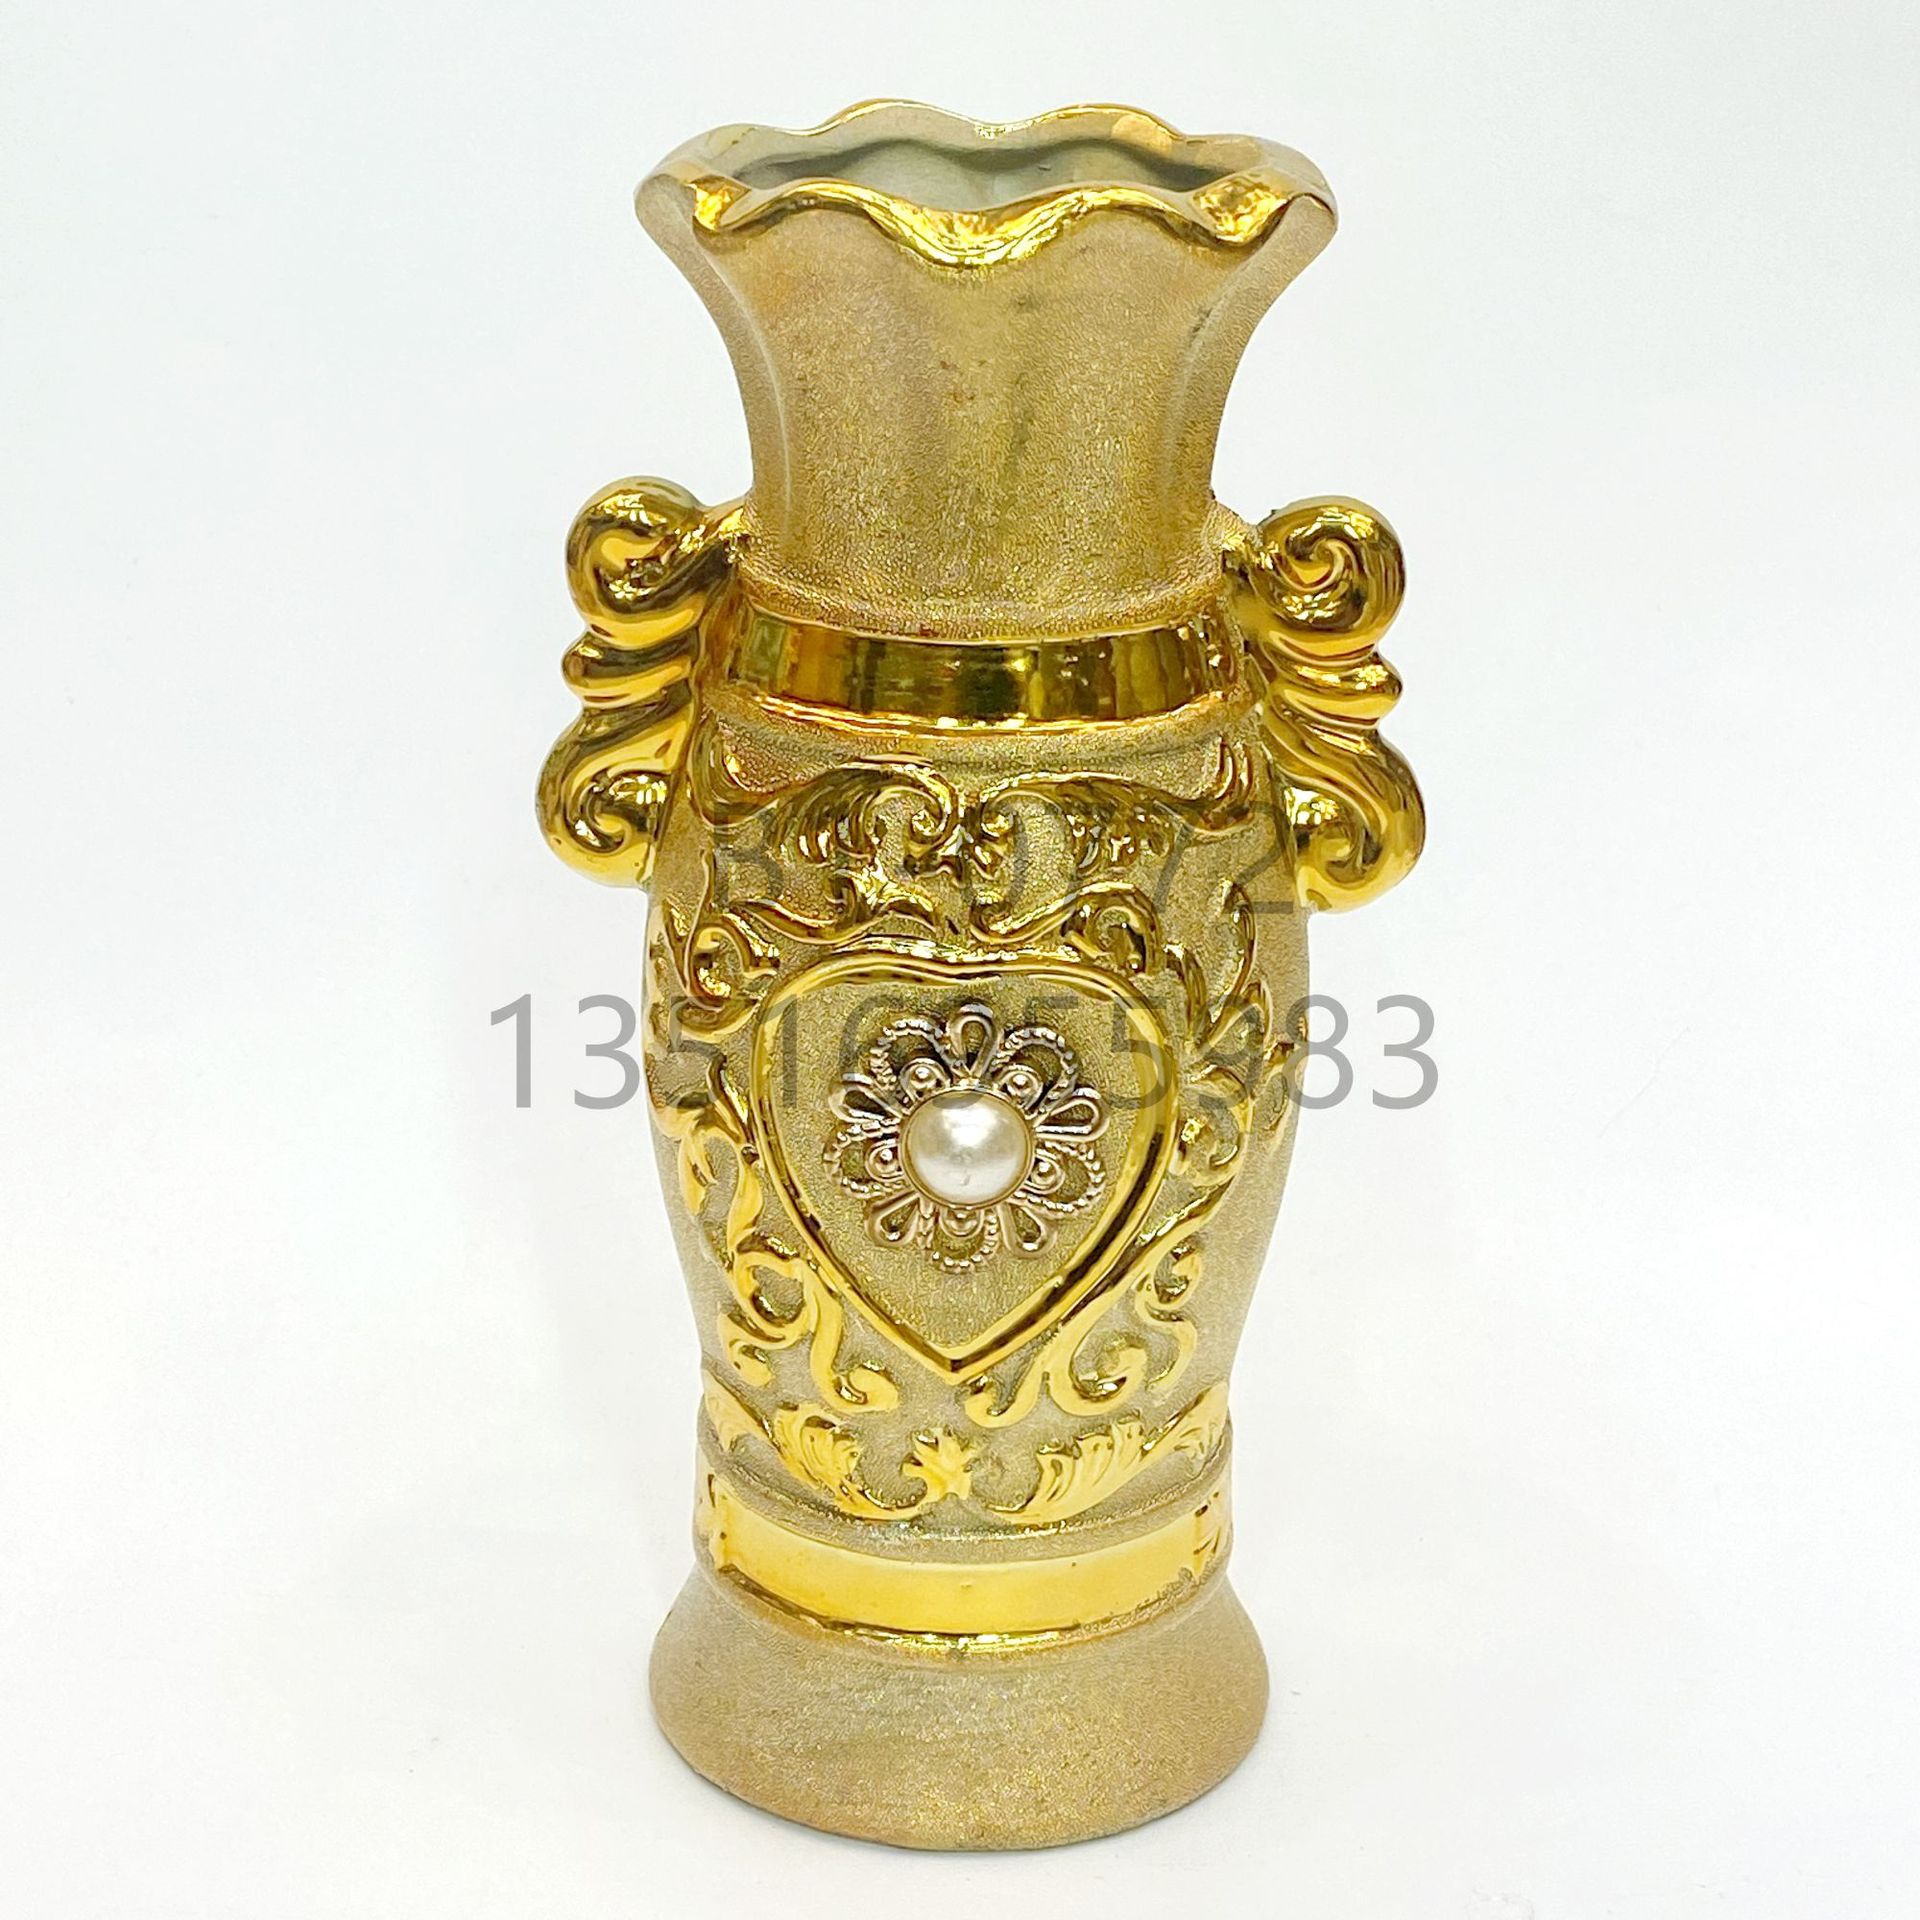 砂金镶嵌珠子陶瓷花瓶 10寸25厘米高档现代客厅家居摆件花盆批发图